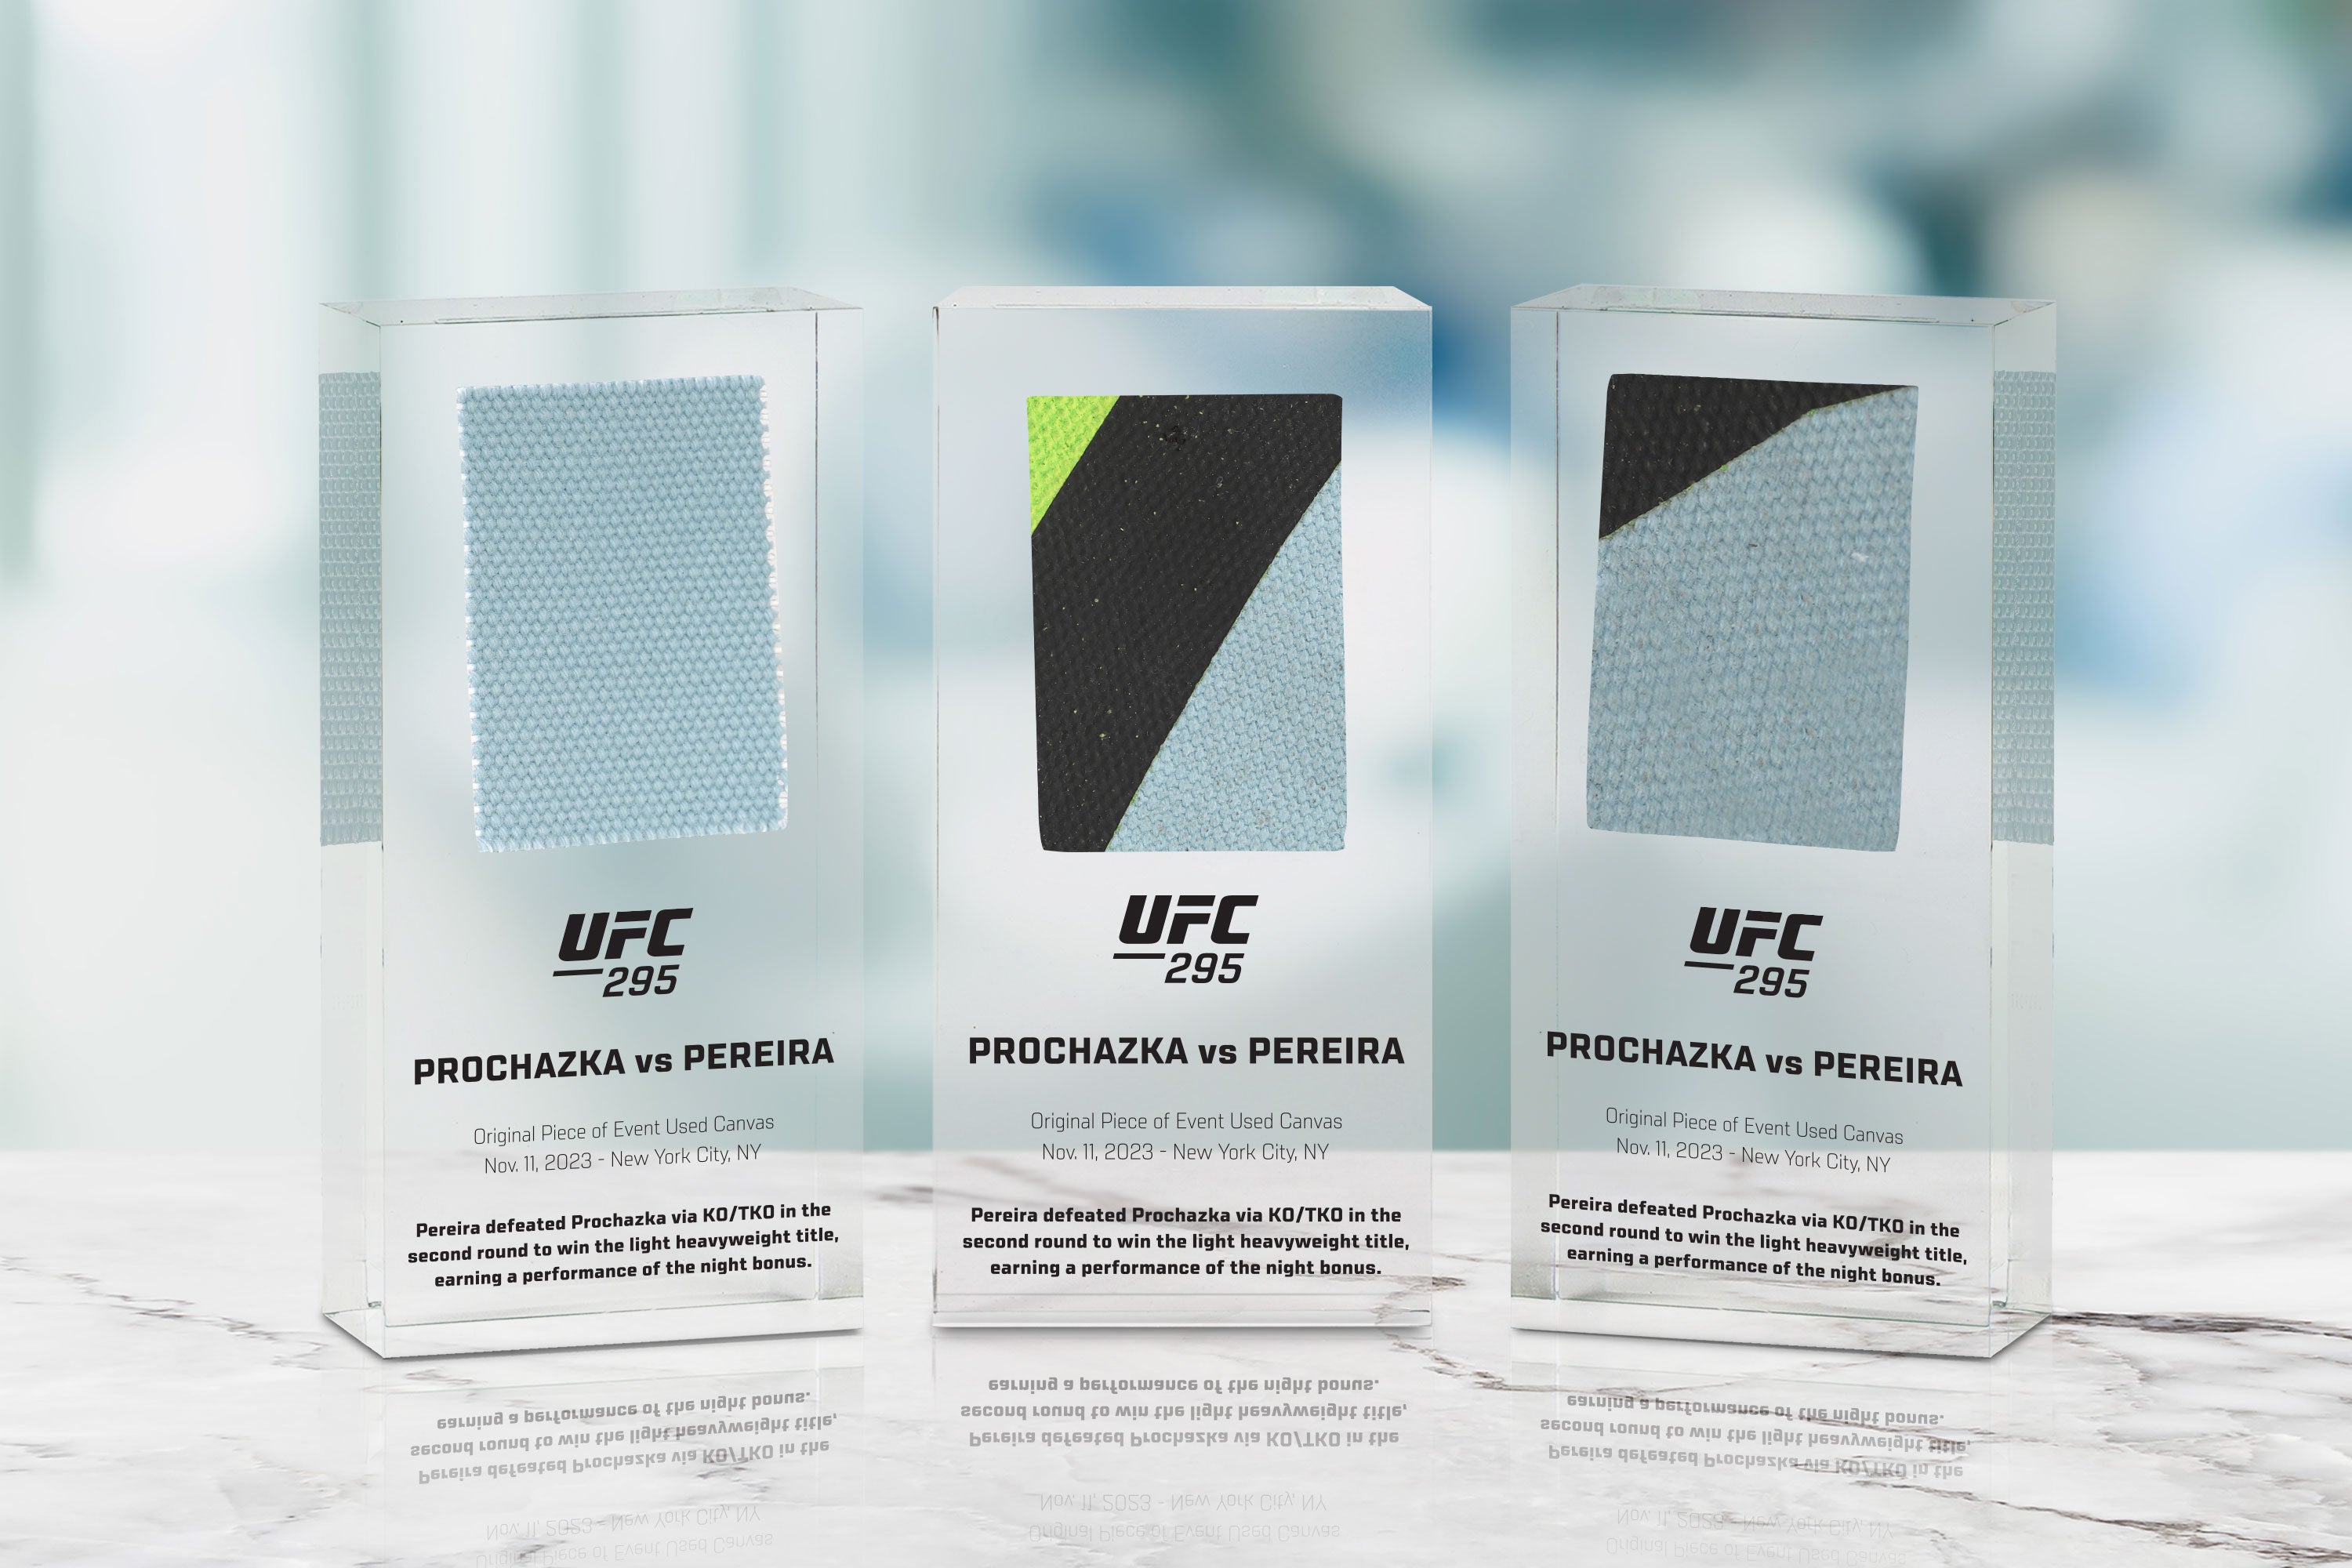 UFC 295: Prochazka vs Pereira Canvas in Acrylic